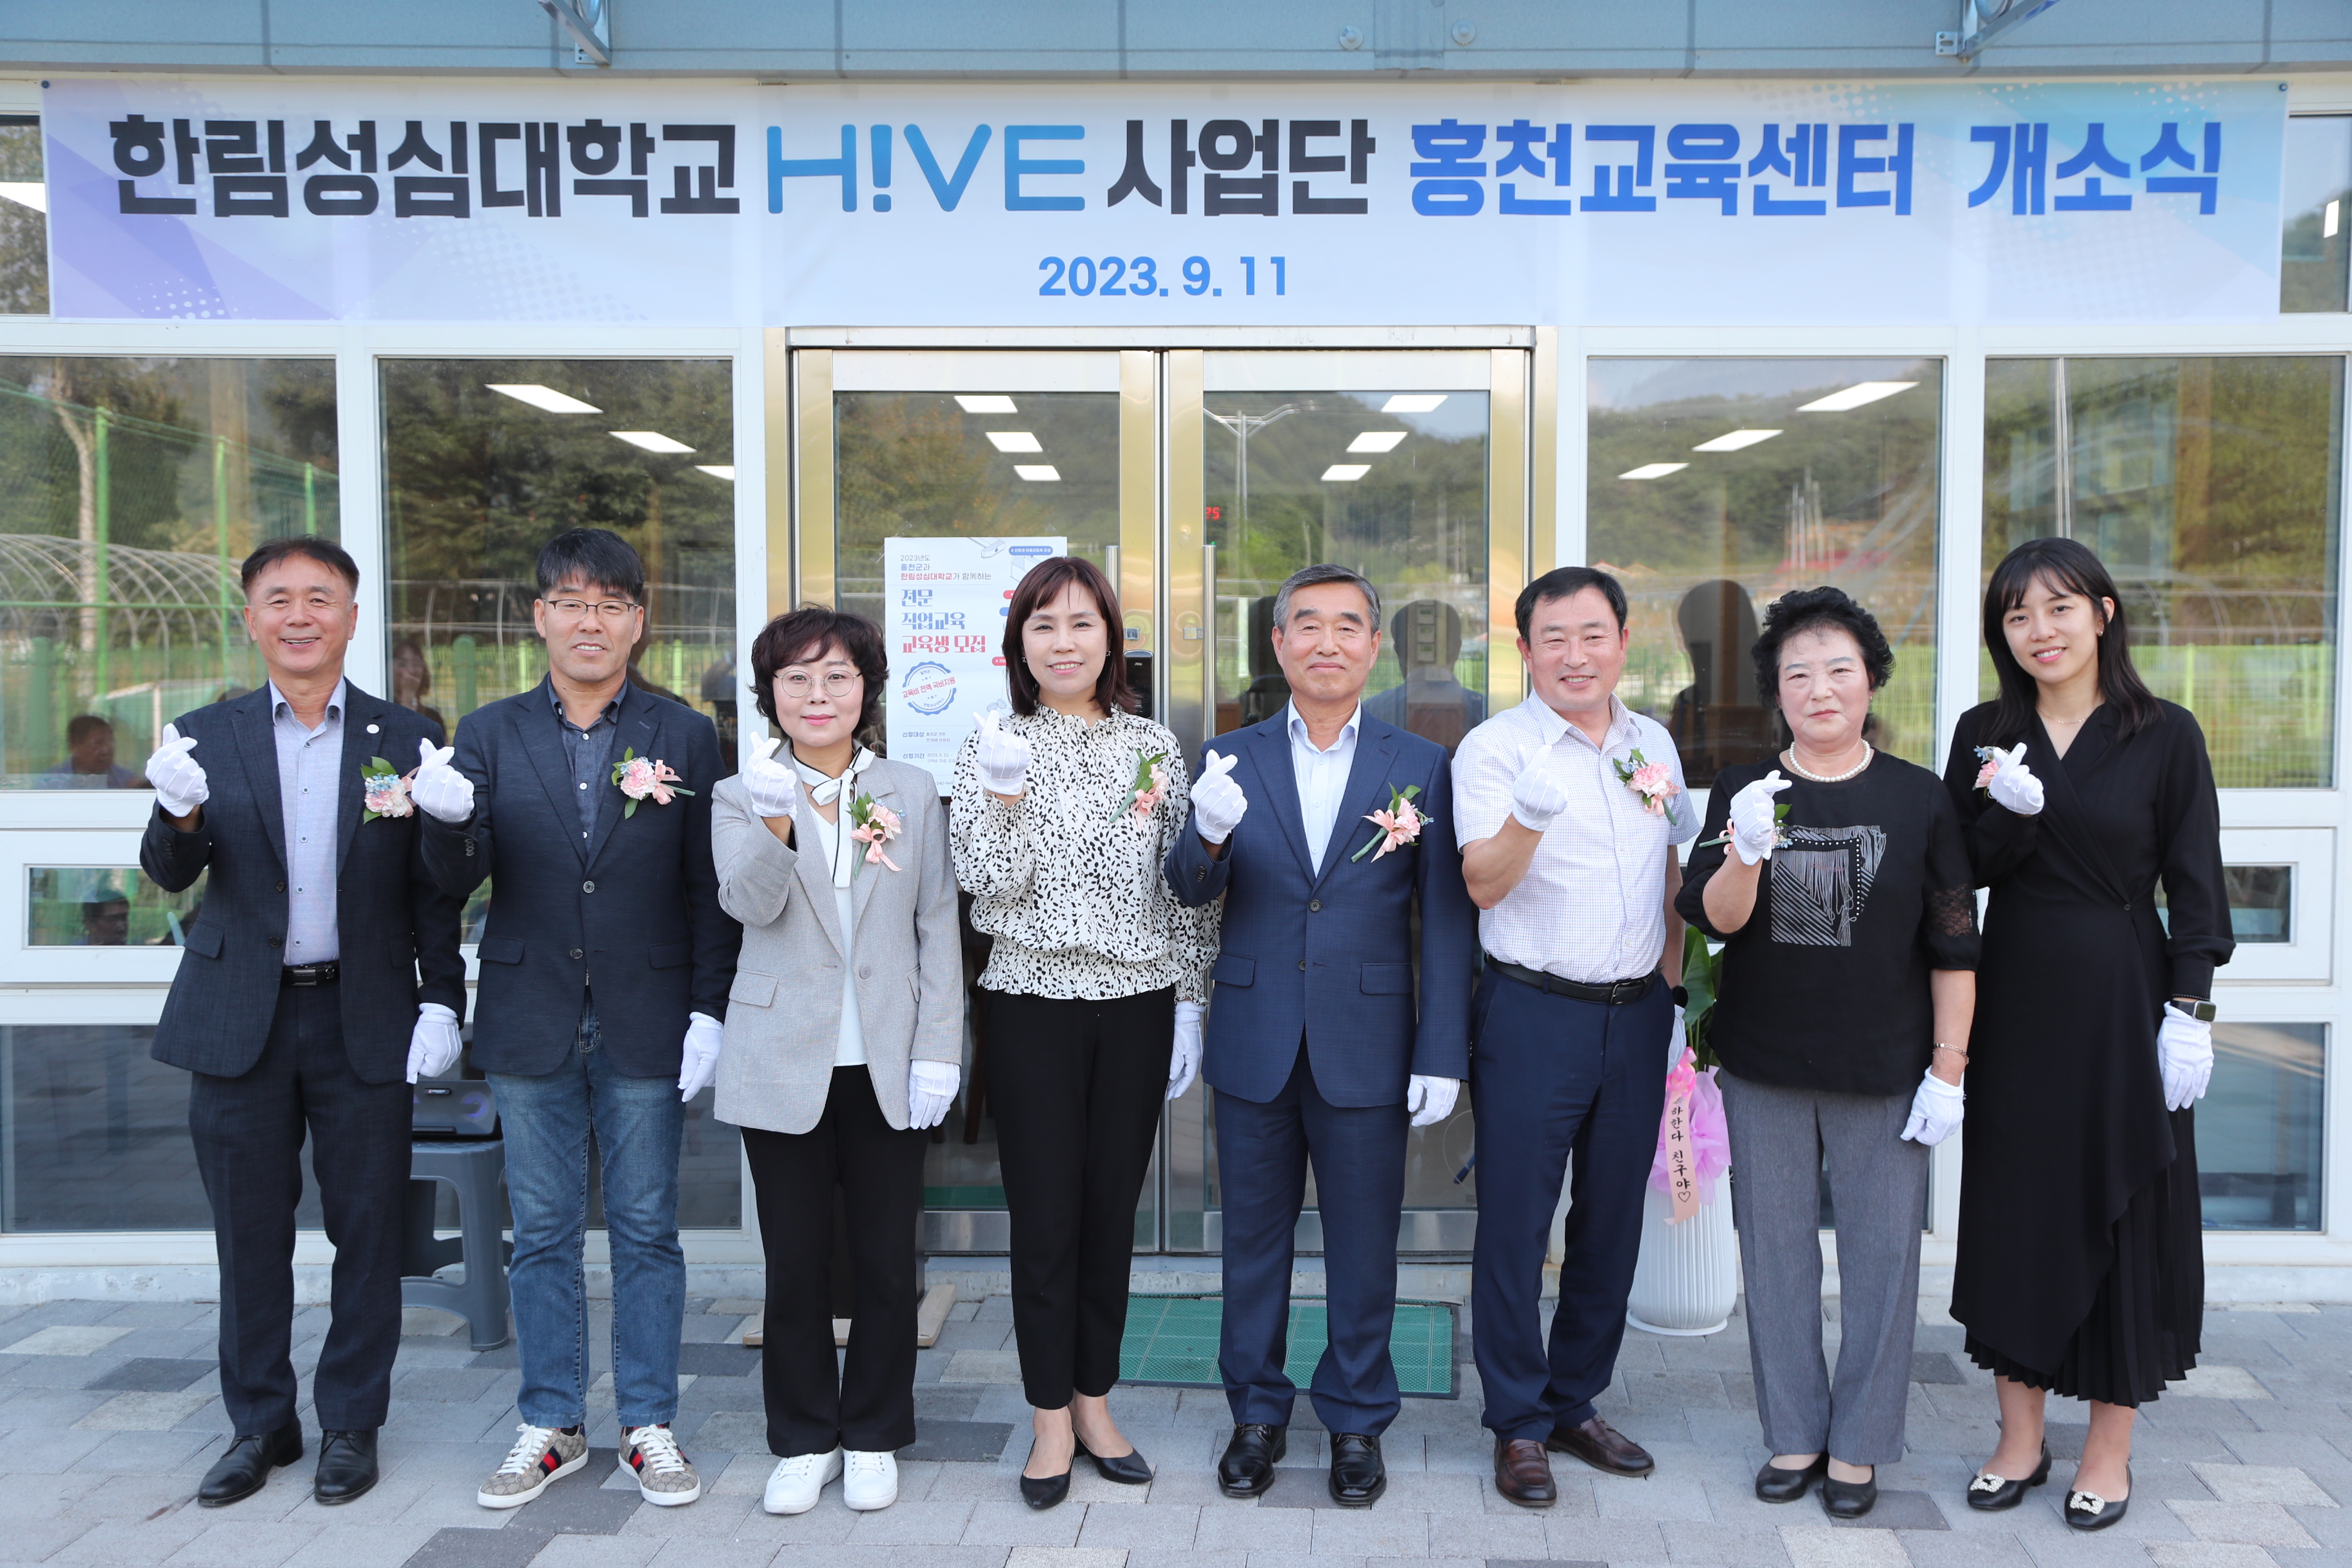 한림성심대학교 고등직업교육거점지구(HiVE)사업단 홍천교육센터 개소식 개최